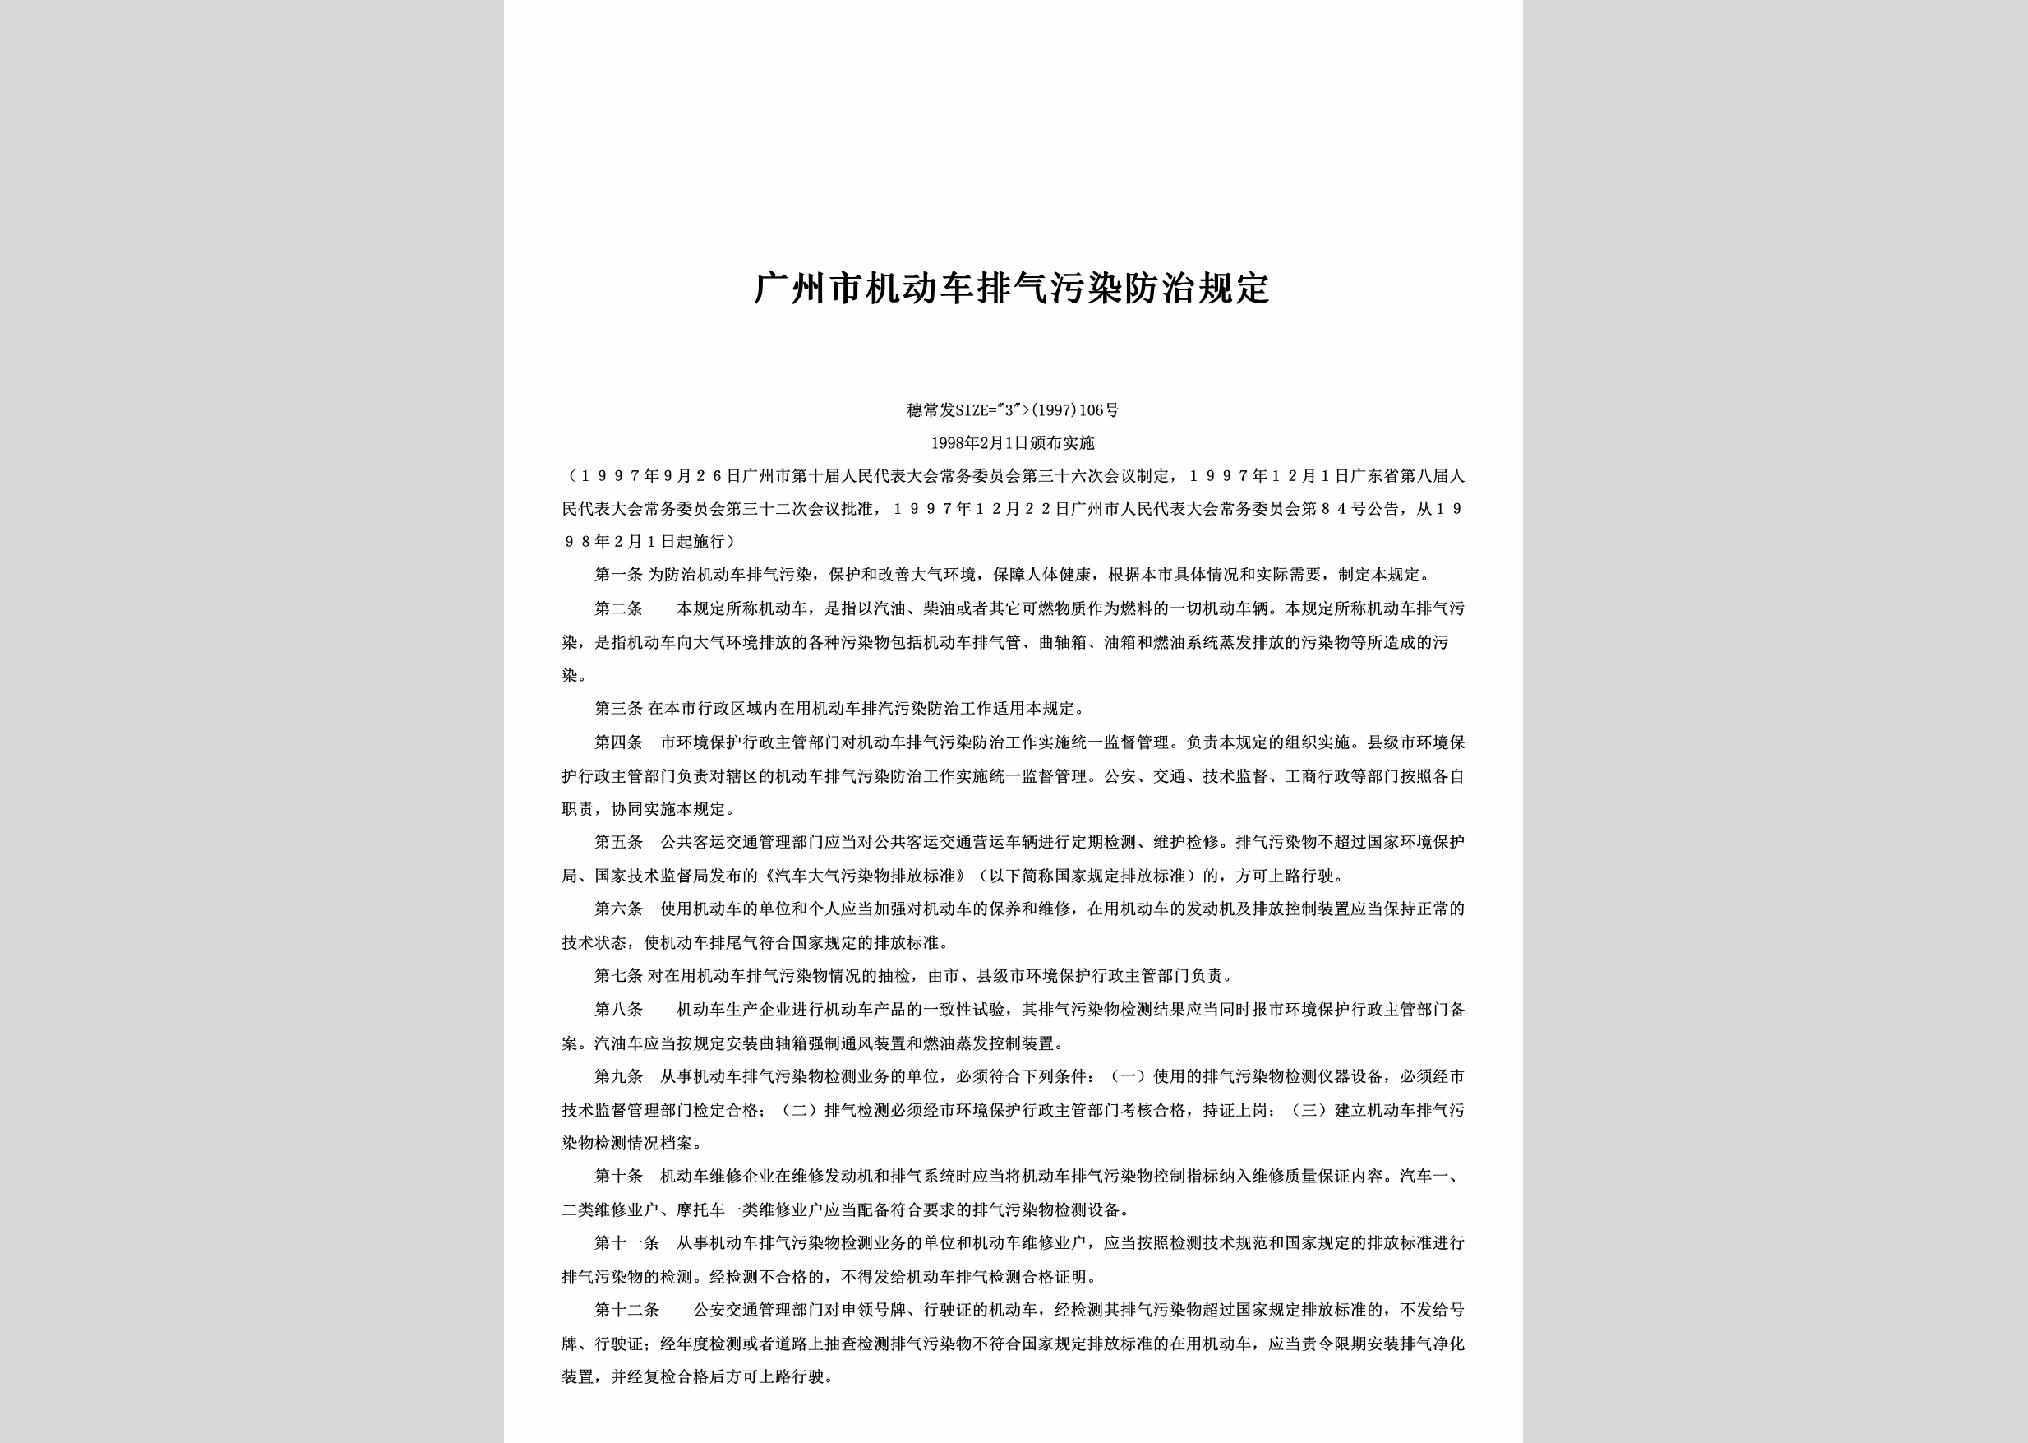 穗常发[1997]106号：广州市机动车排气污染防治规定